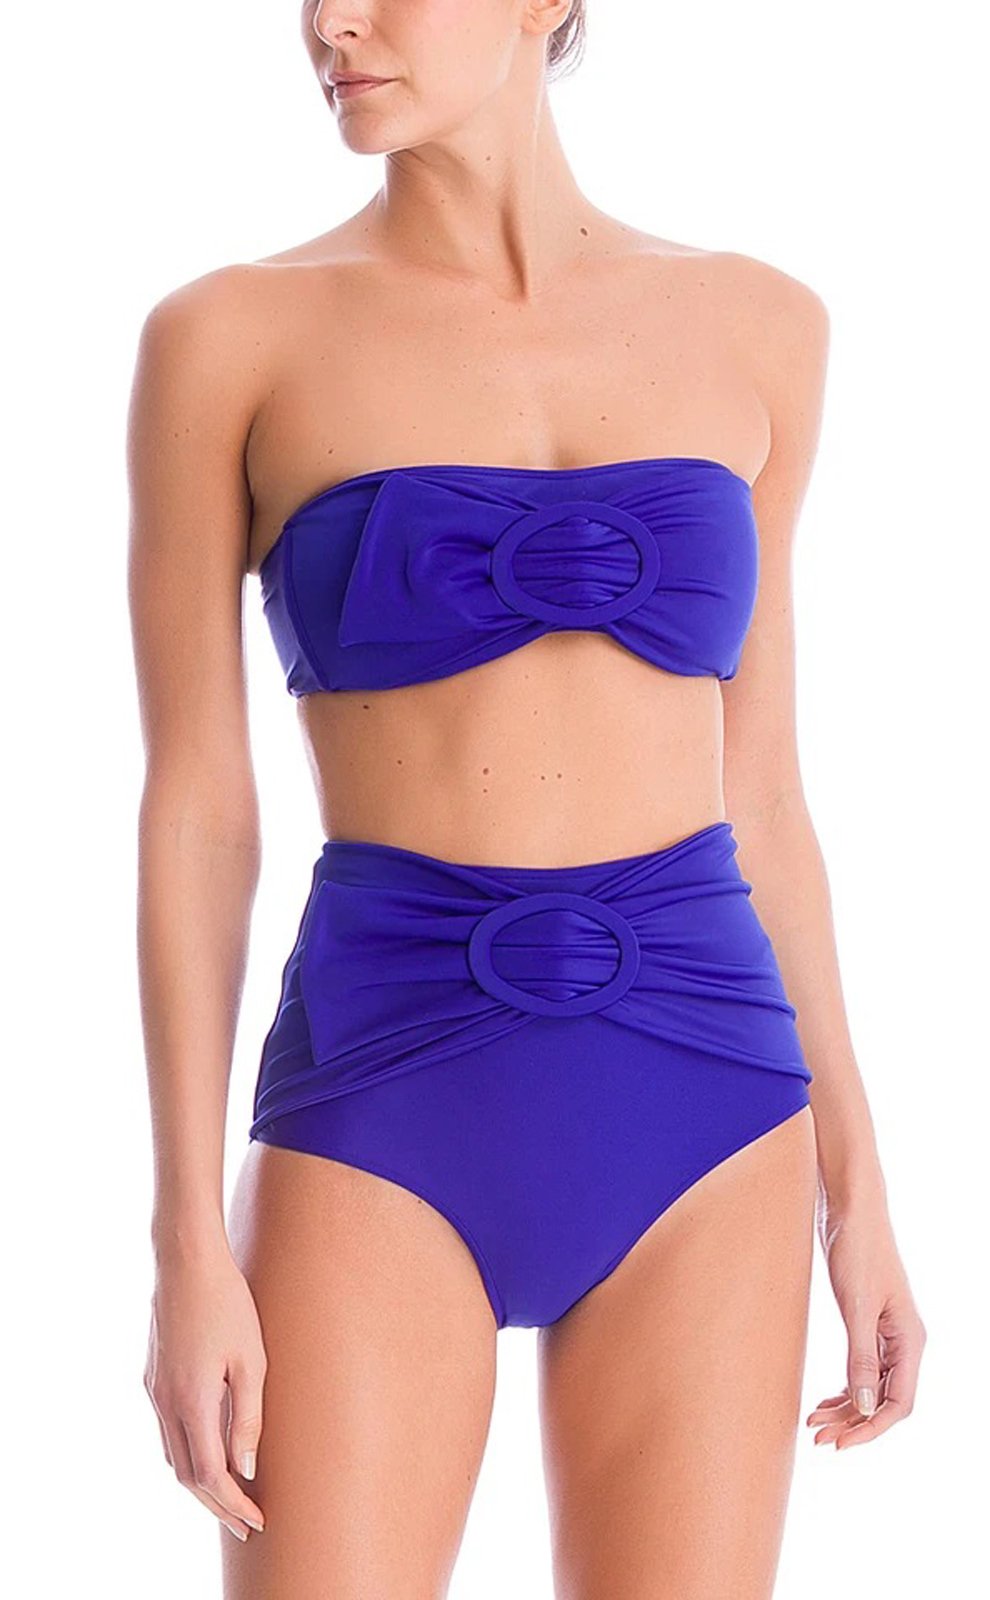 bandeau bikini top with high waisted bottoms